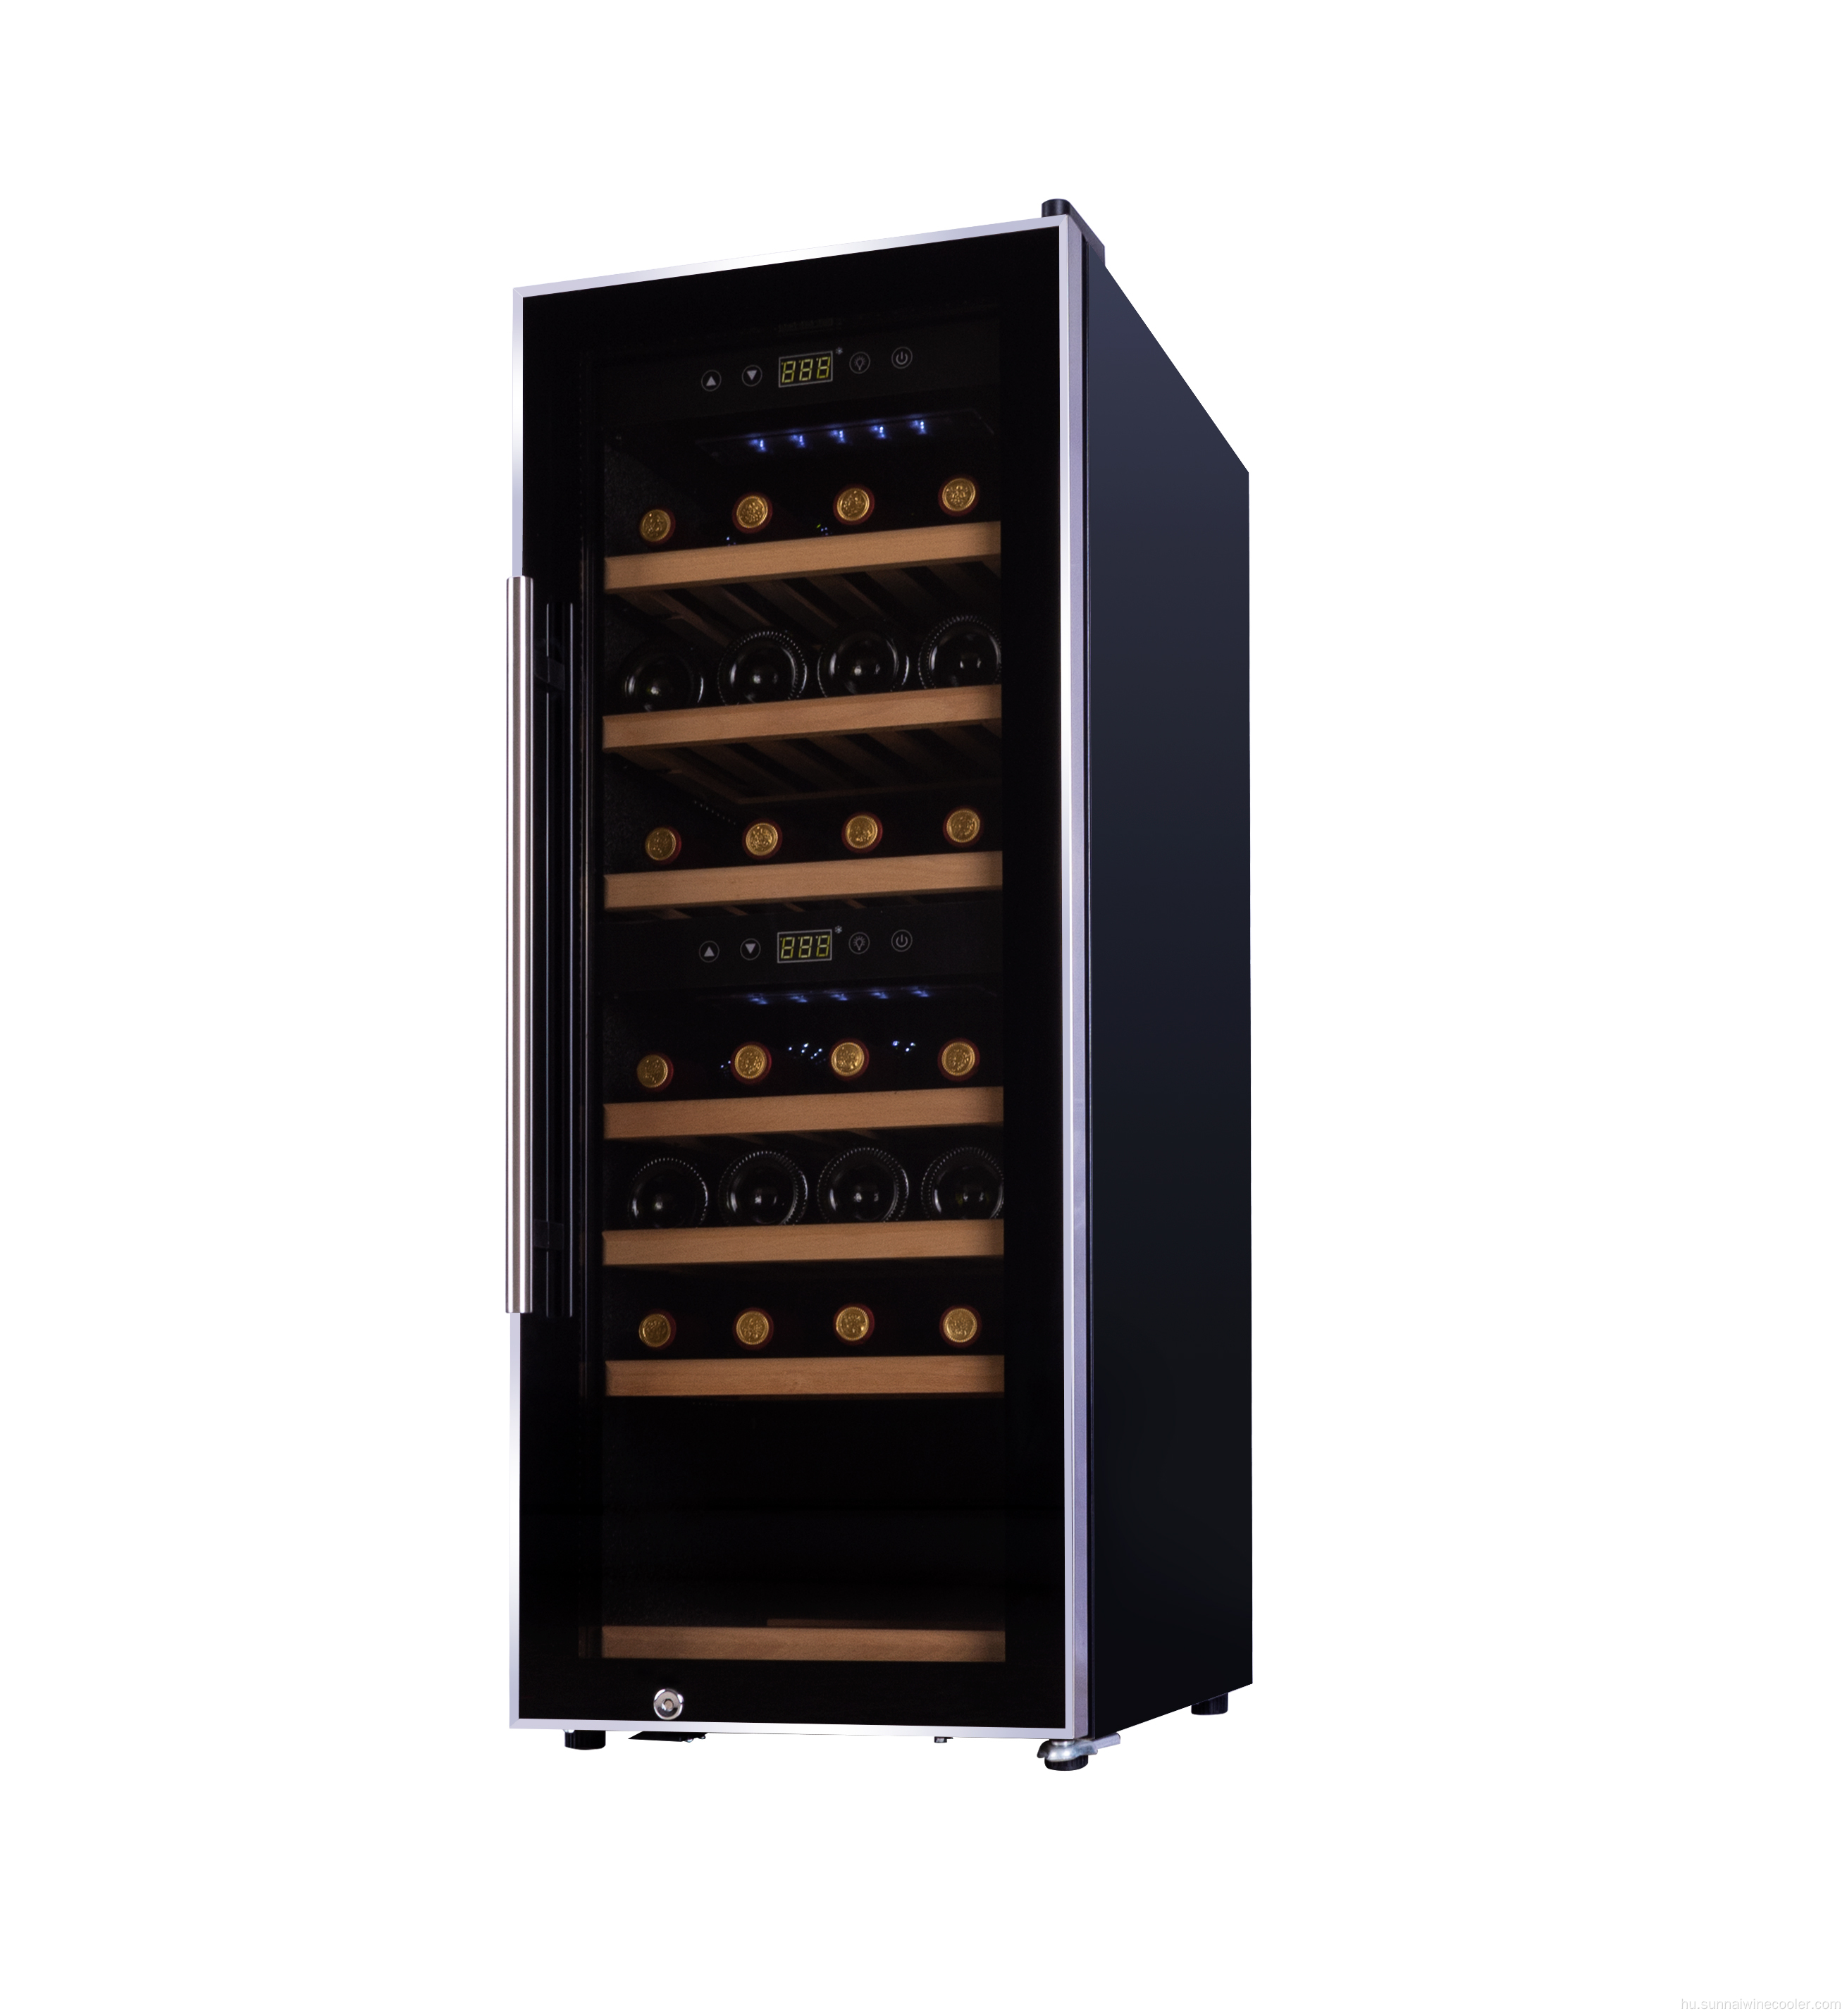 Megjelenítse a polcot és a digitális vezérlő bor hűtőszekrényét